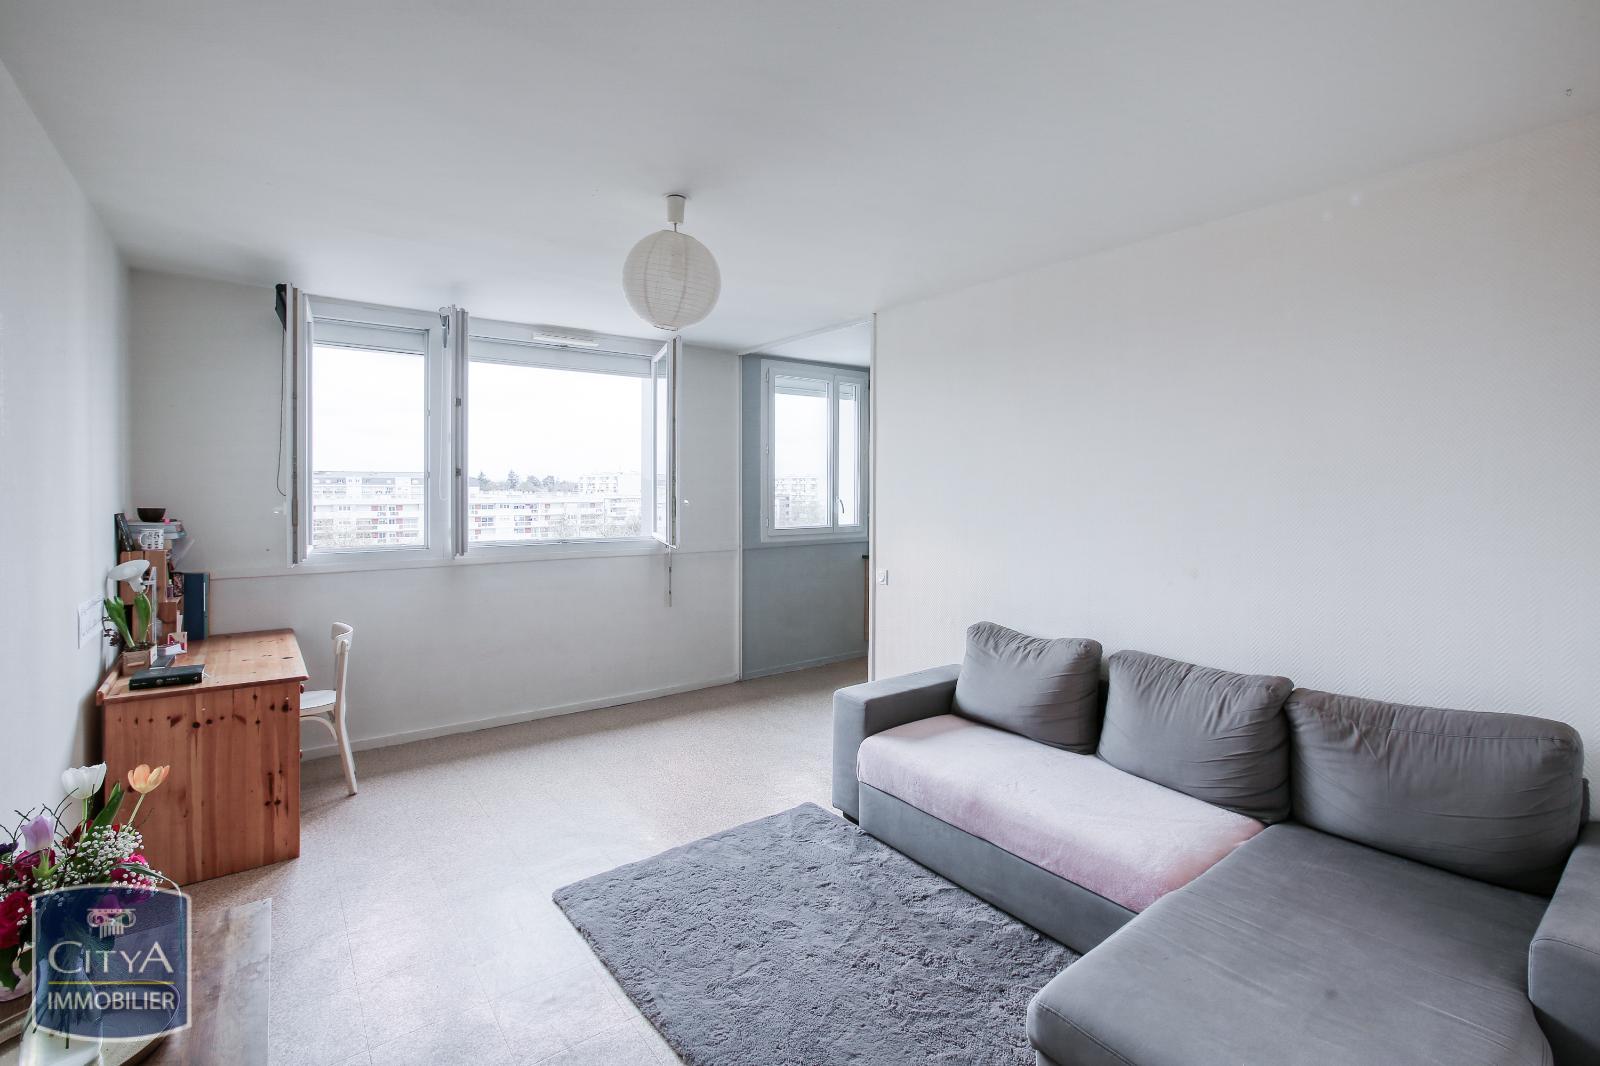 Vente Appartement 52m² 2 Pièces à Angers (49000) - Citya